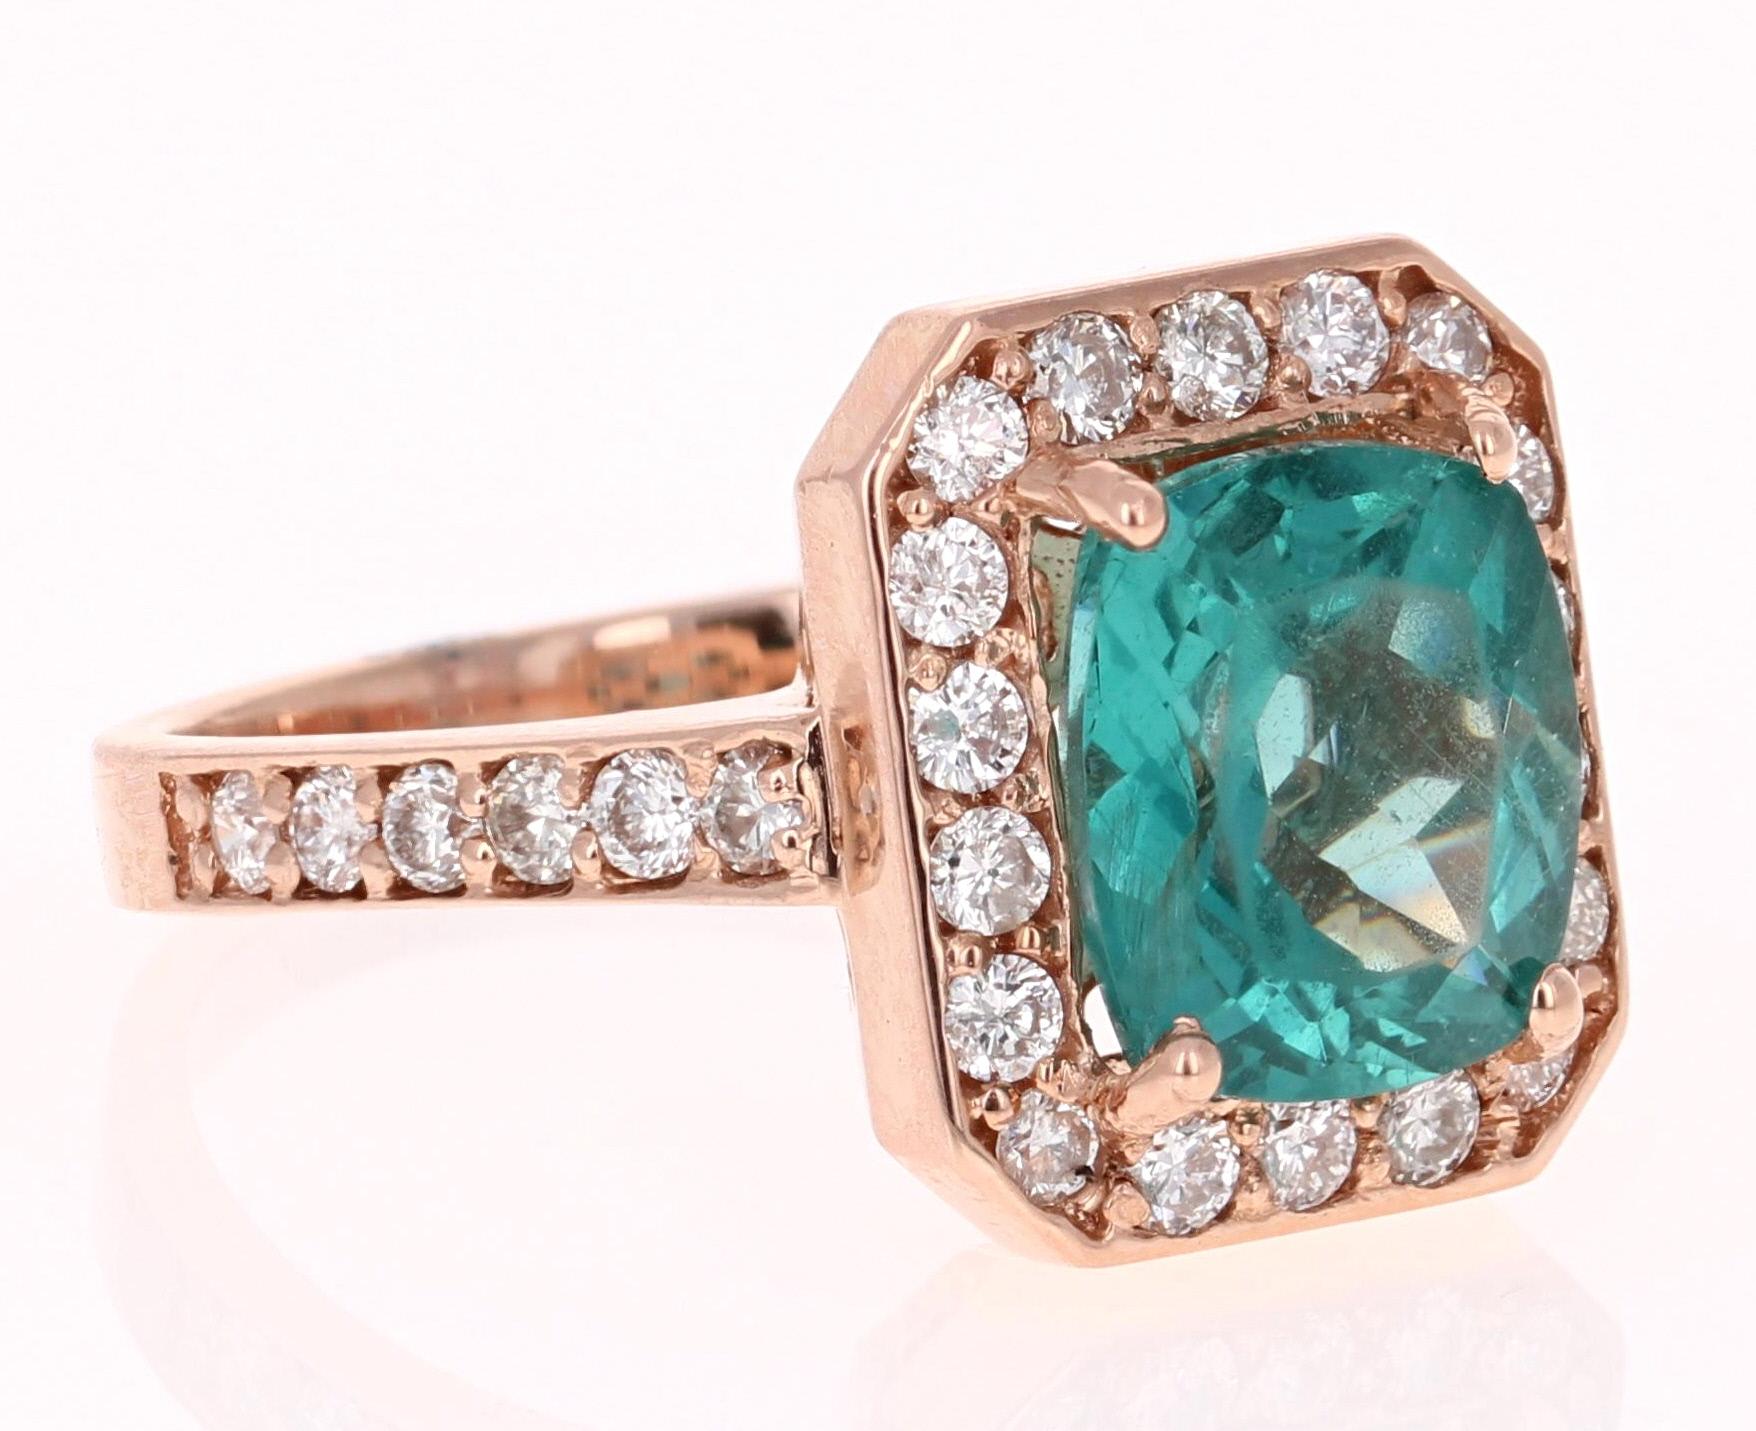 Ein Apatit-Ring in wunderschönem Roségold gefasst - eine so schöne und einzigartige Kombination!!!

Dieser atemberaubende Ring aus Apatit und Diamanten lässt sich leicht in einen einzigartigen und stilvollen Verlobungsring für Ihre besondere Person